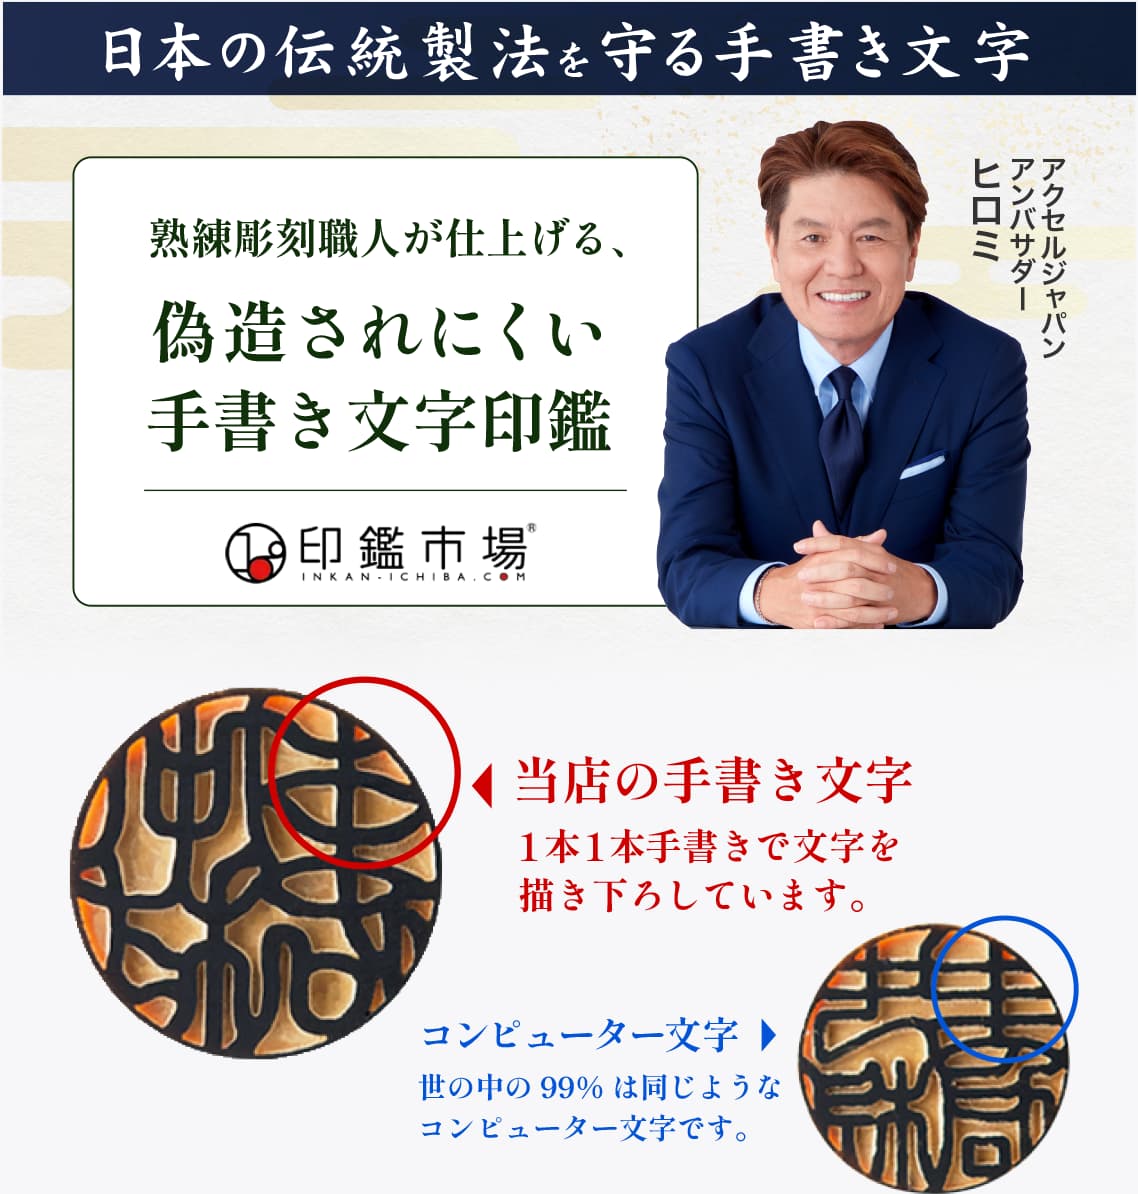 日本の伝統製法を守る手書き文字 偽造されにくい手書き文字印鑑 手書き文字とコンピューター文字の違い